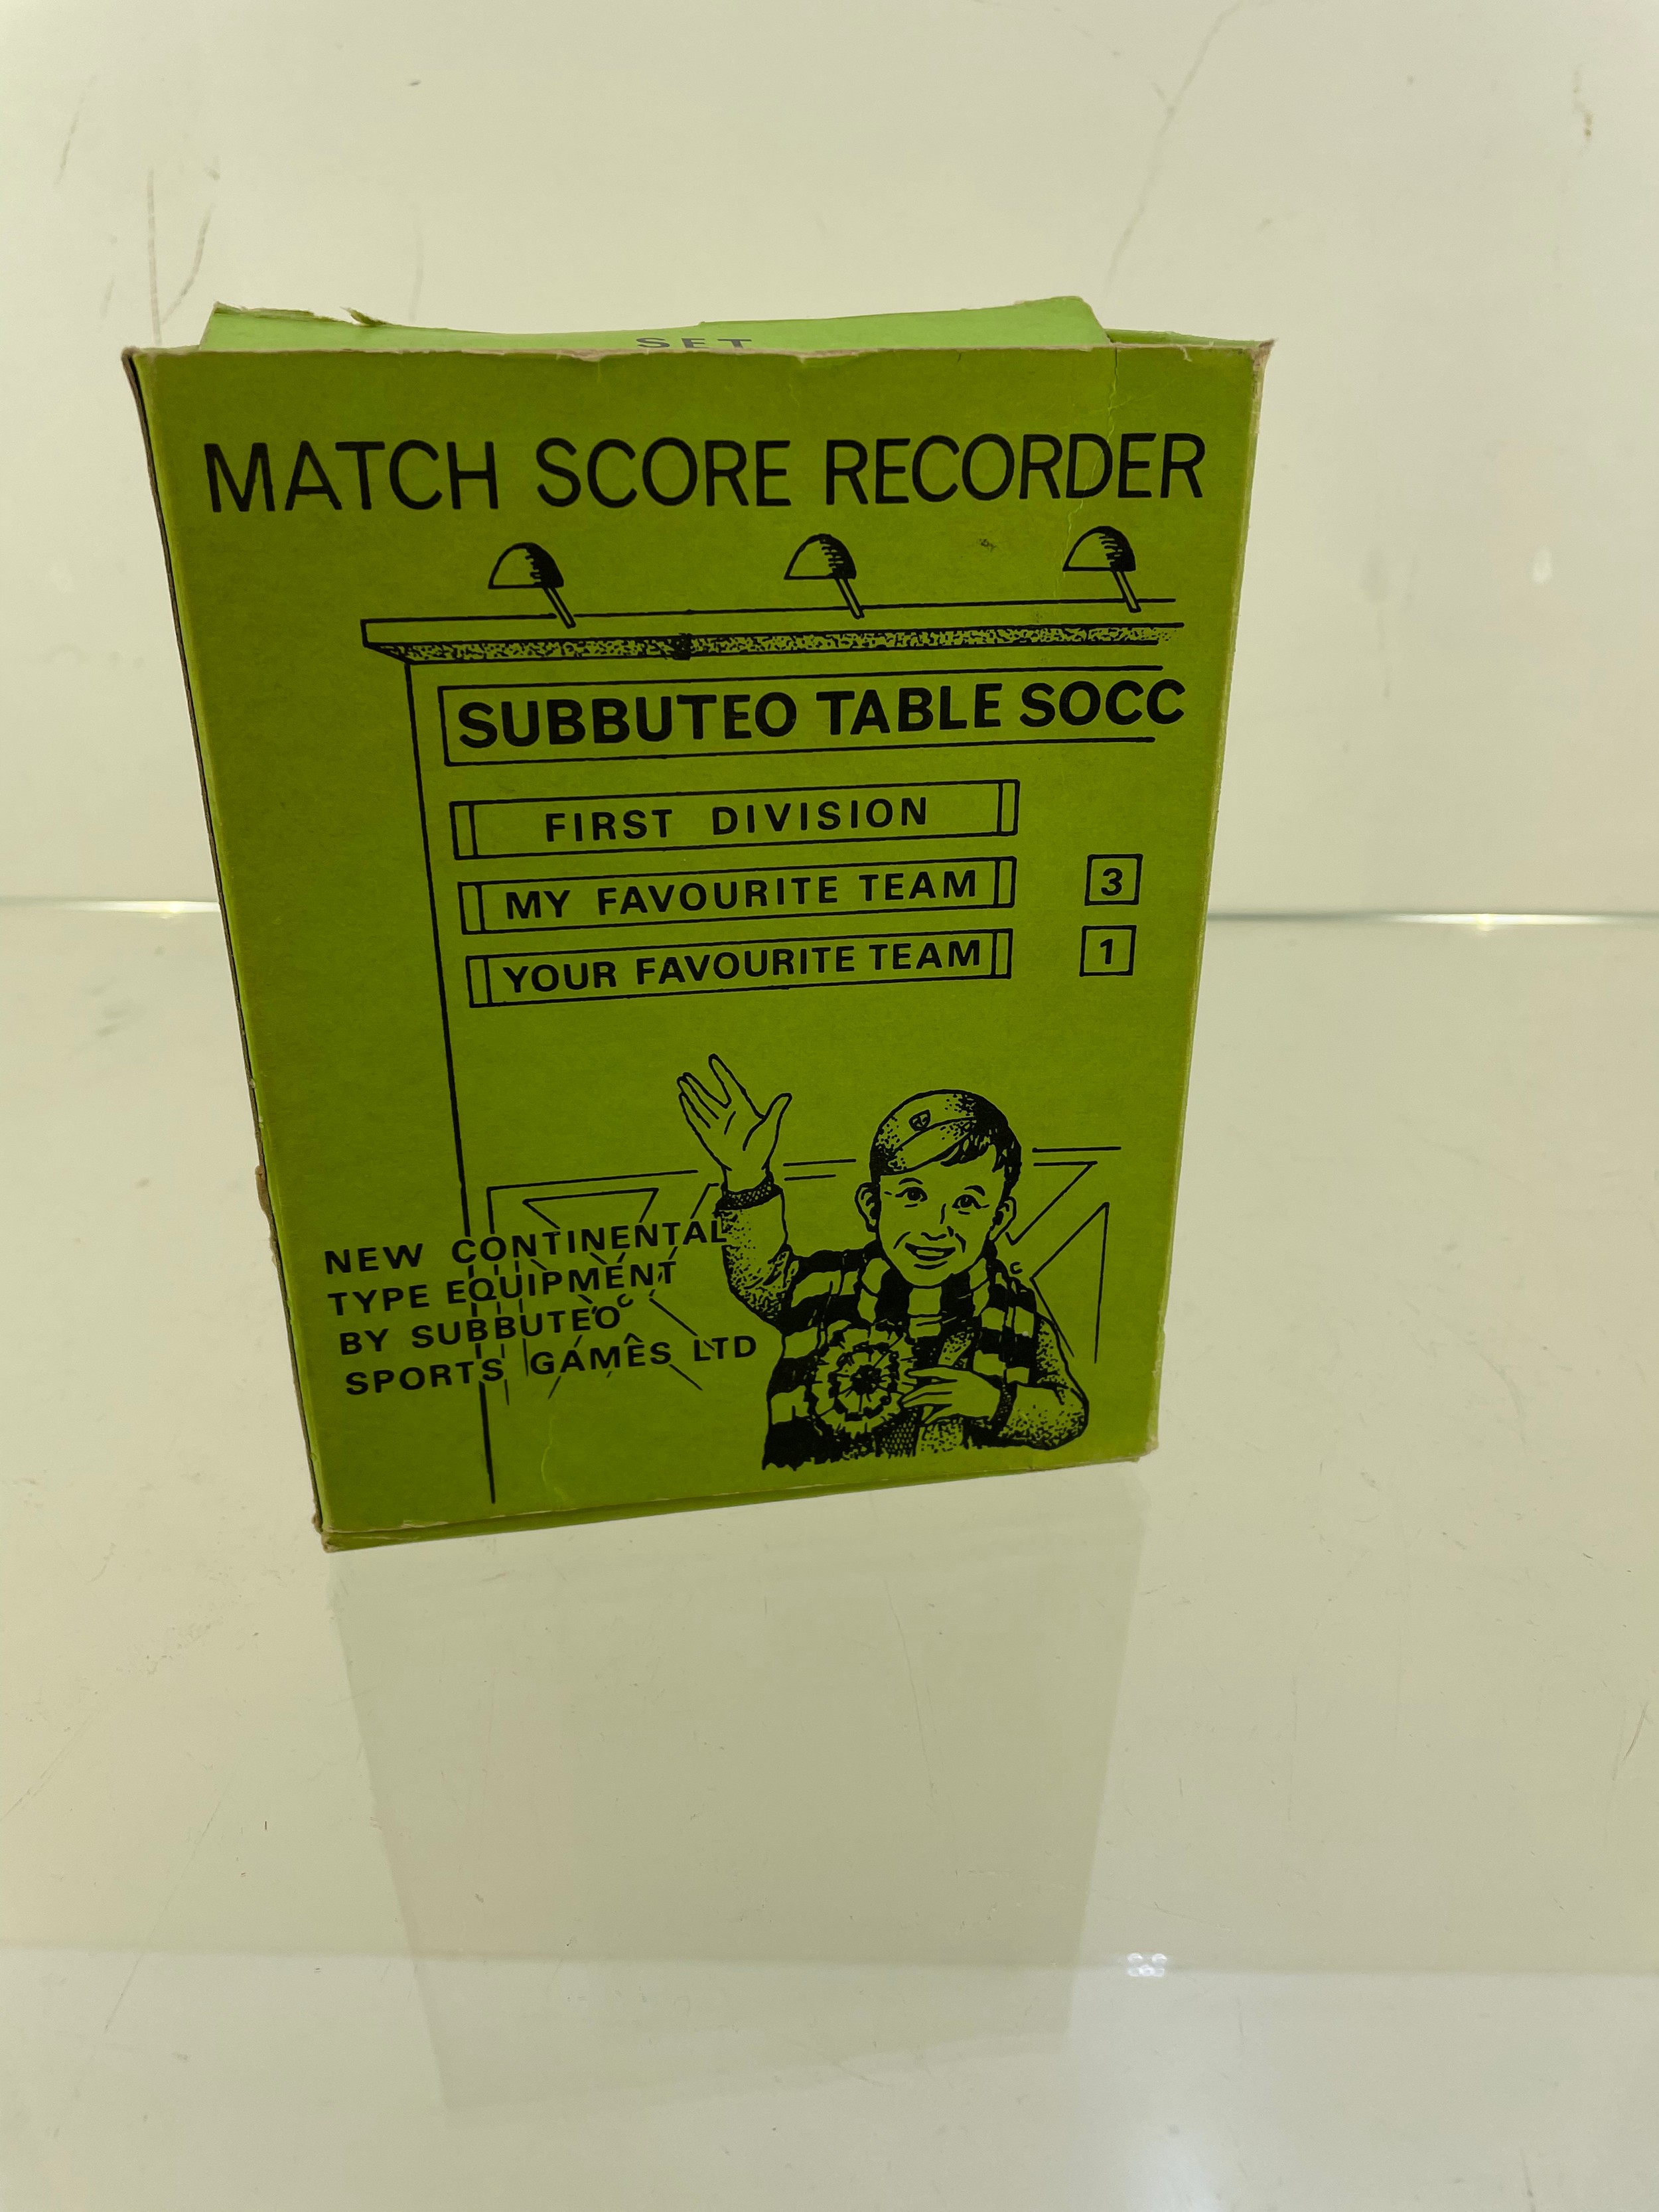 Subbueto table soccer match score recorder